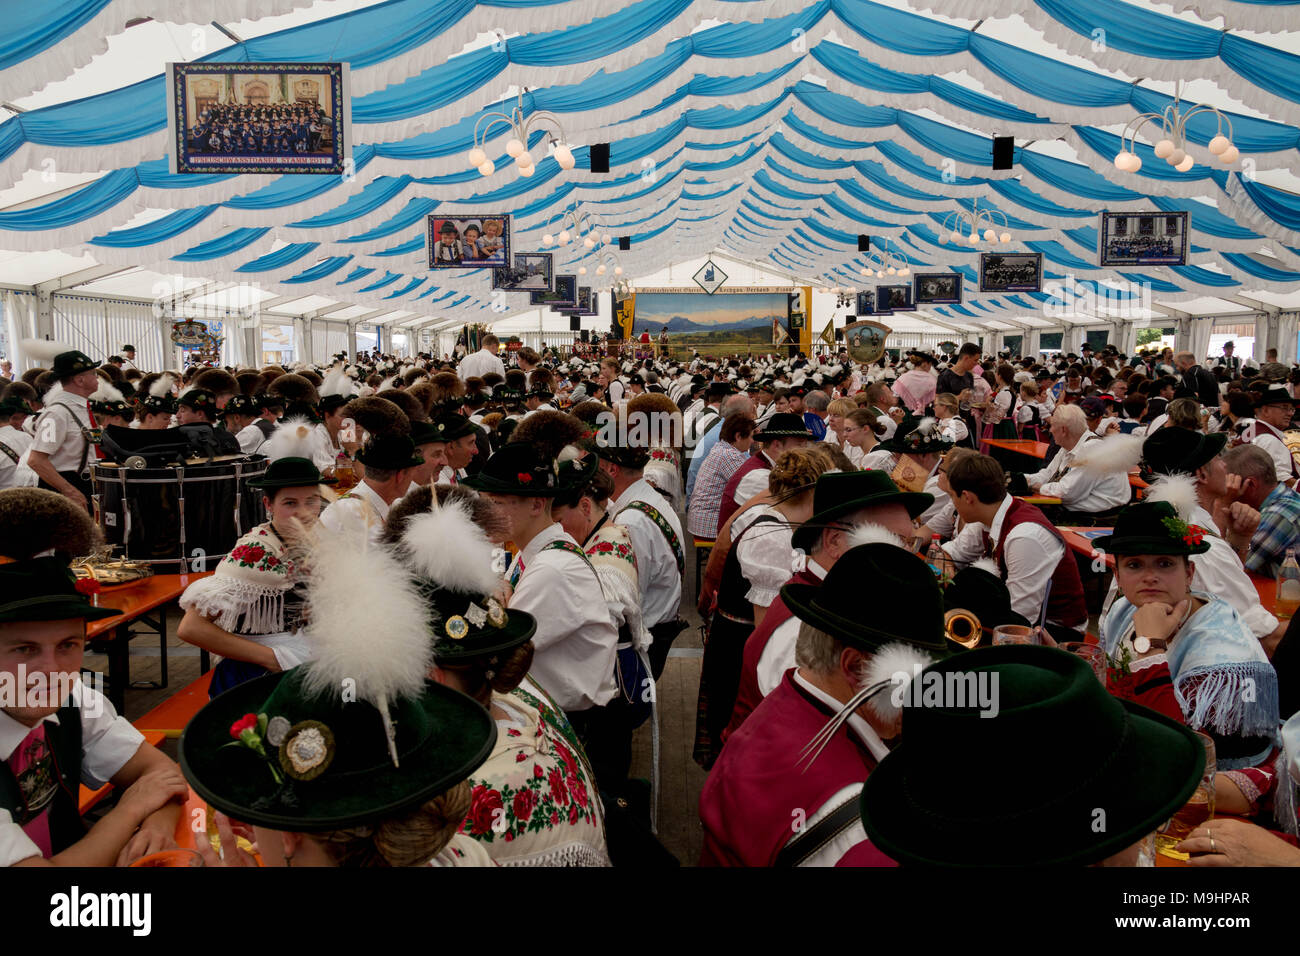 Tradizionale festa tedesca con persone sedute sulle panchine in grande tenda festival Foto Stock